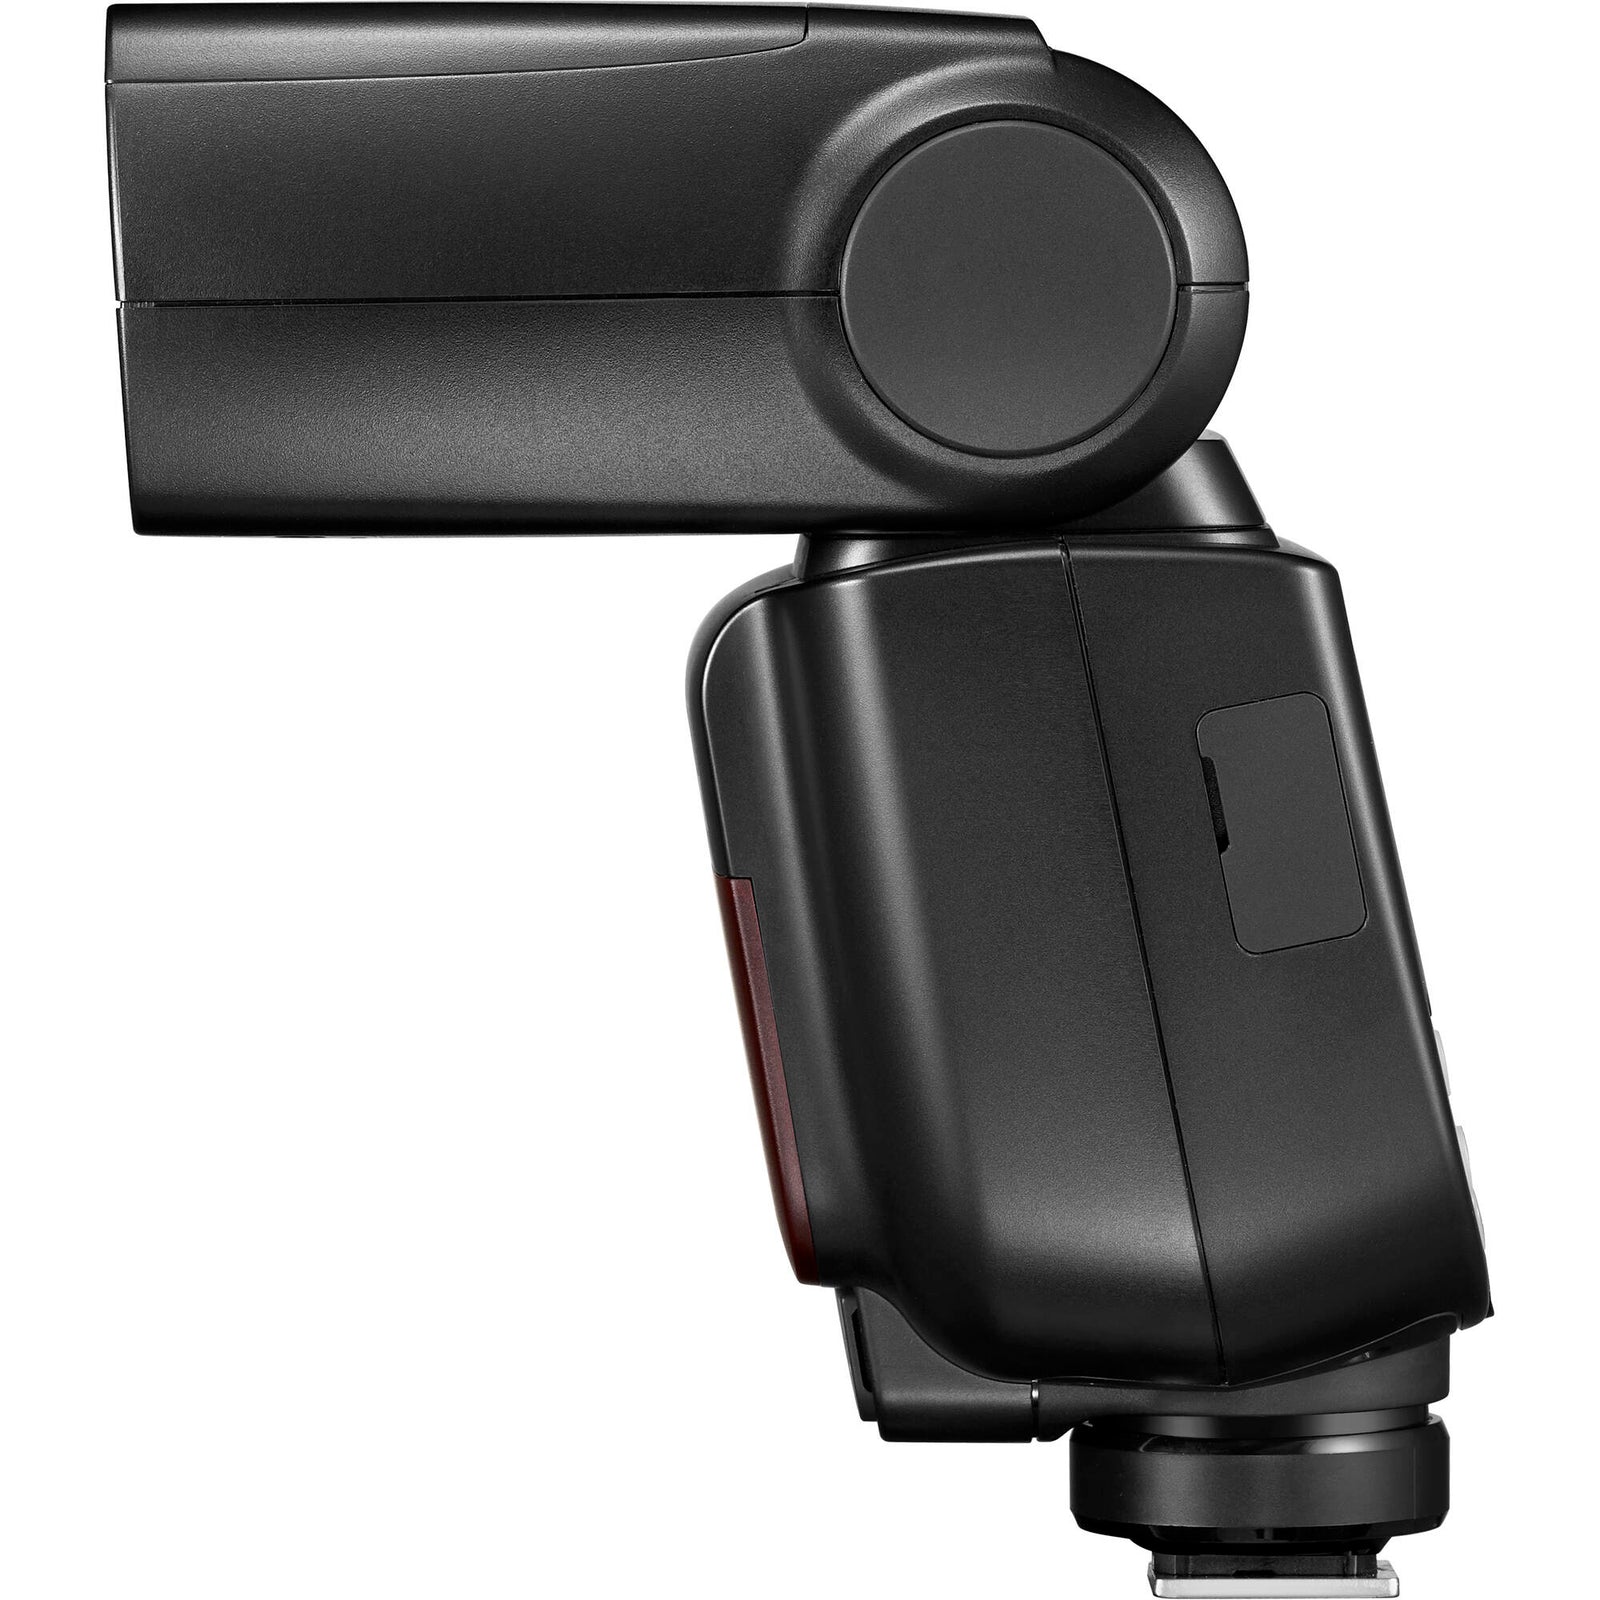 Godox TT685II N Speedlite High-Speed Sync External TTL for Nikon Flash D80  D90 D7100 D5100 D5200 D3100 D3200